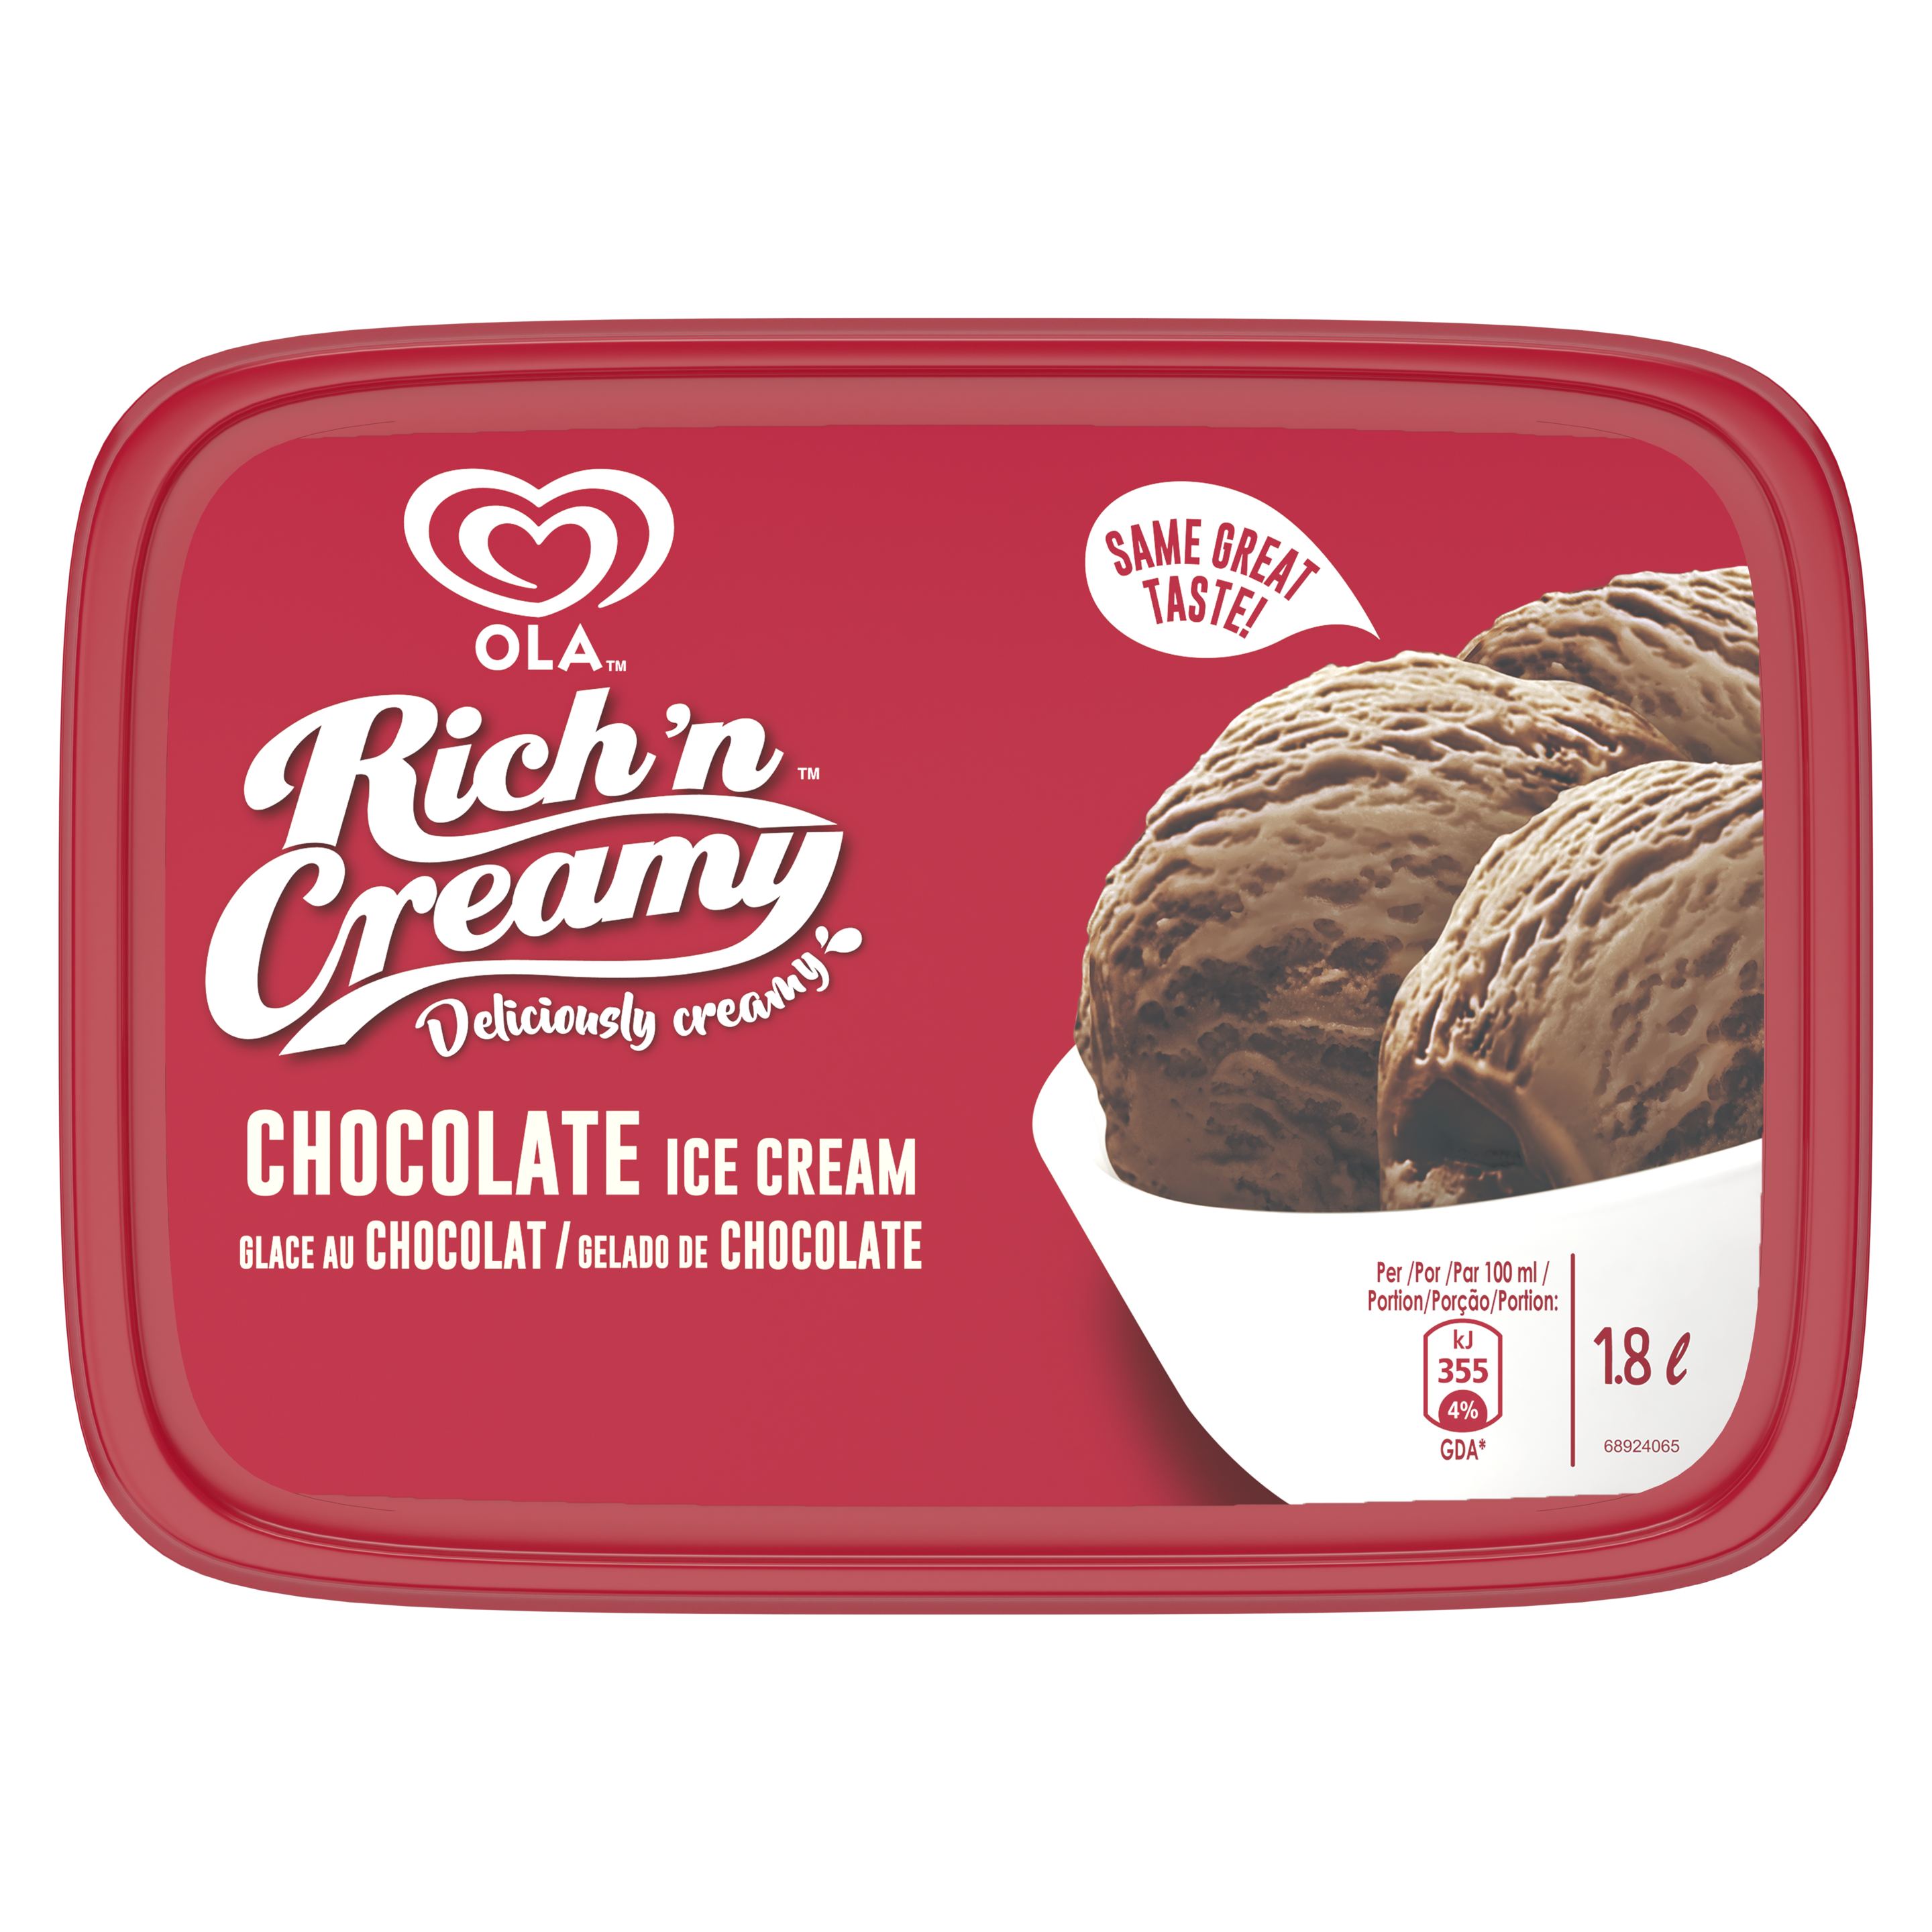 OLA Rich 'n Creamy Chocolate